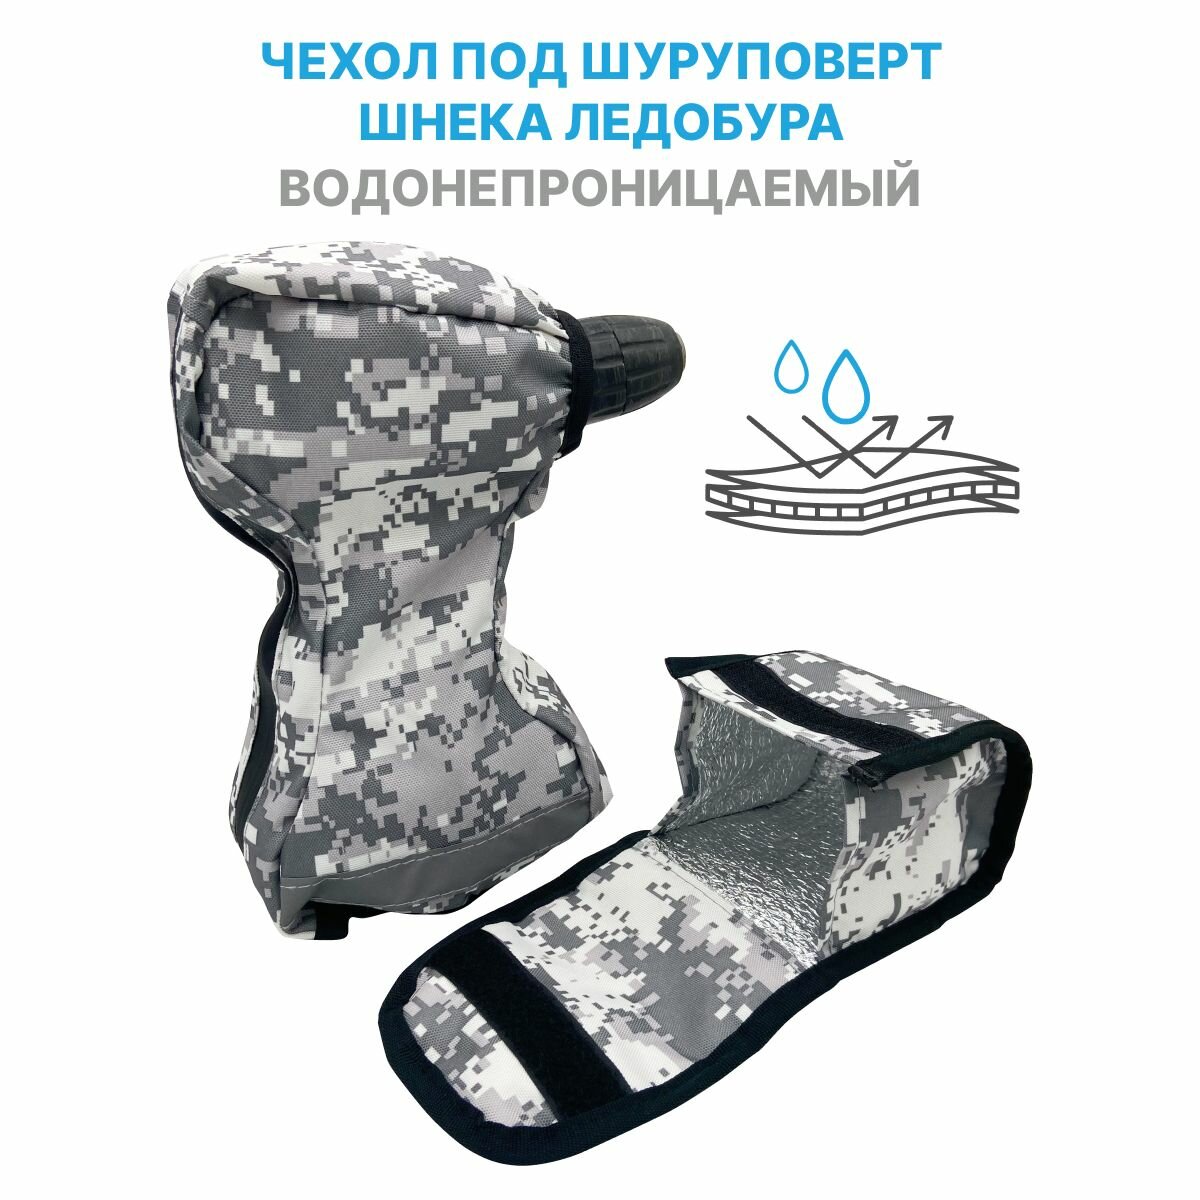 Защитный чехол для шуруповерта водонепроницаемый с полиуретановым покрытием для зимней рыбалки со шнеком ледобура